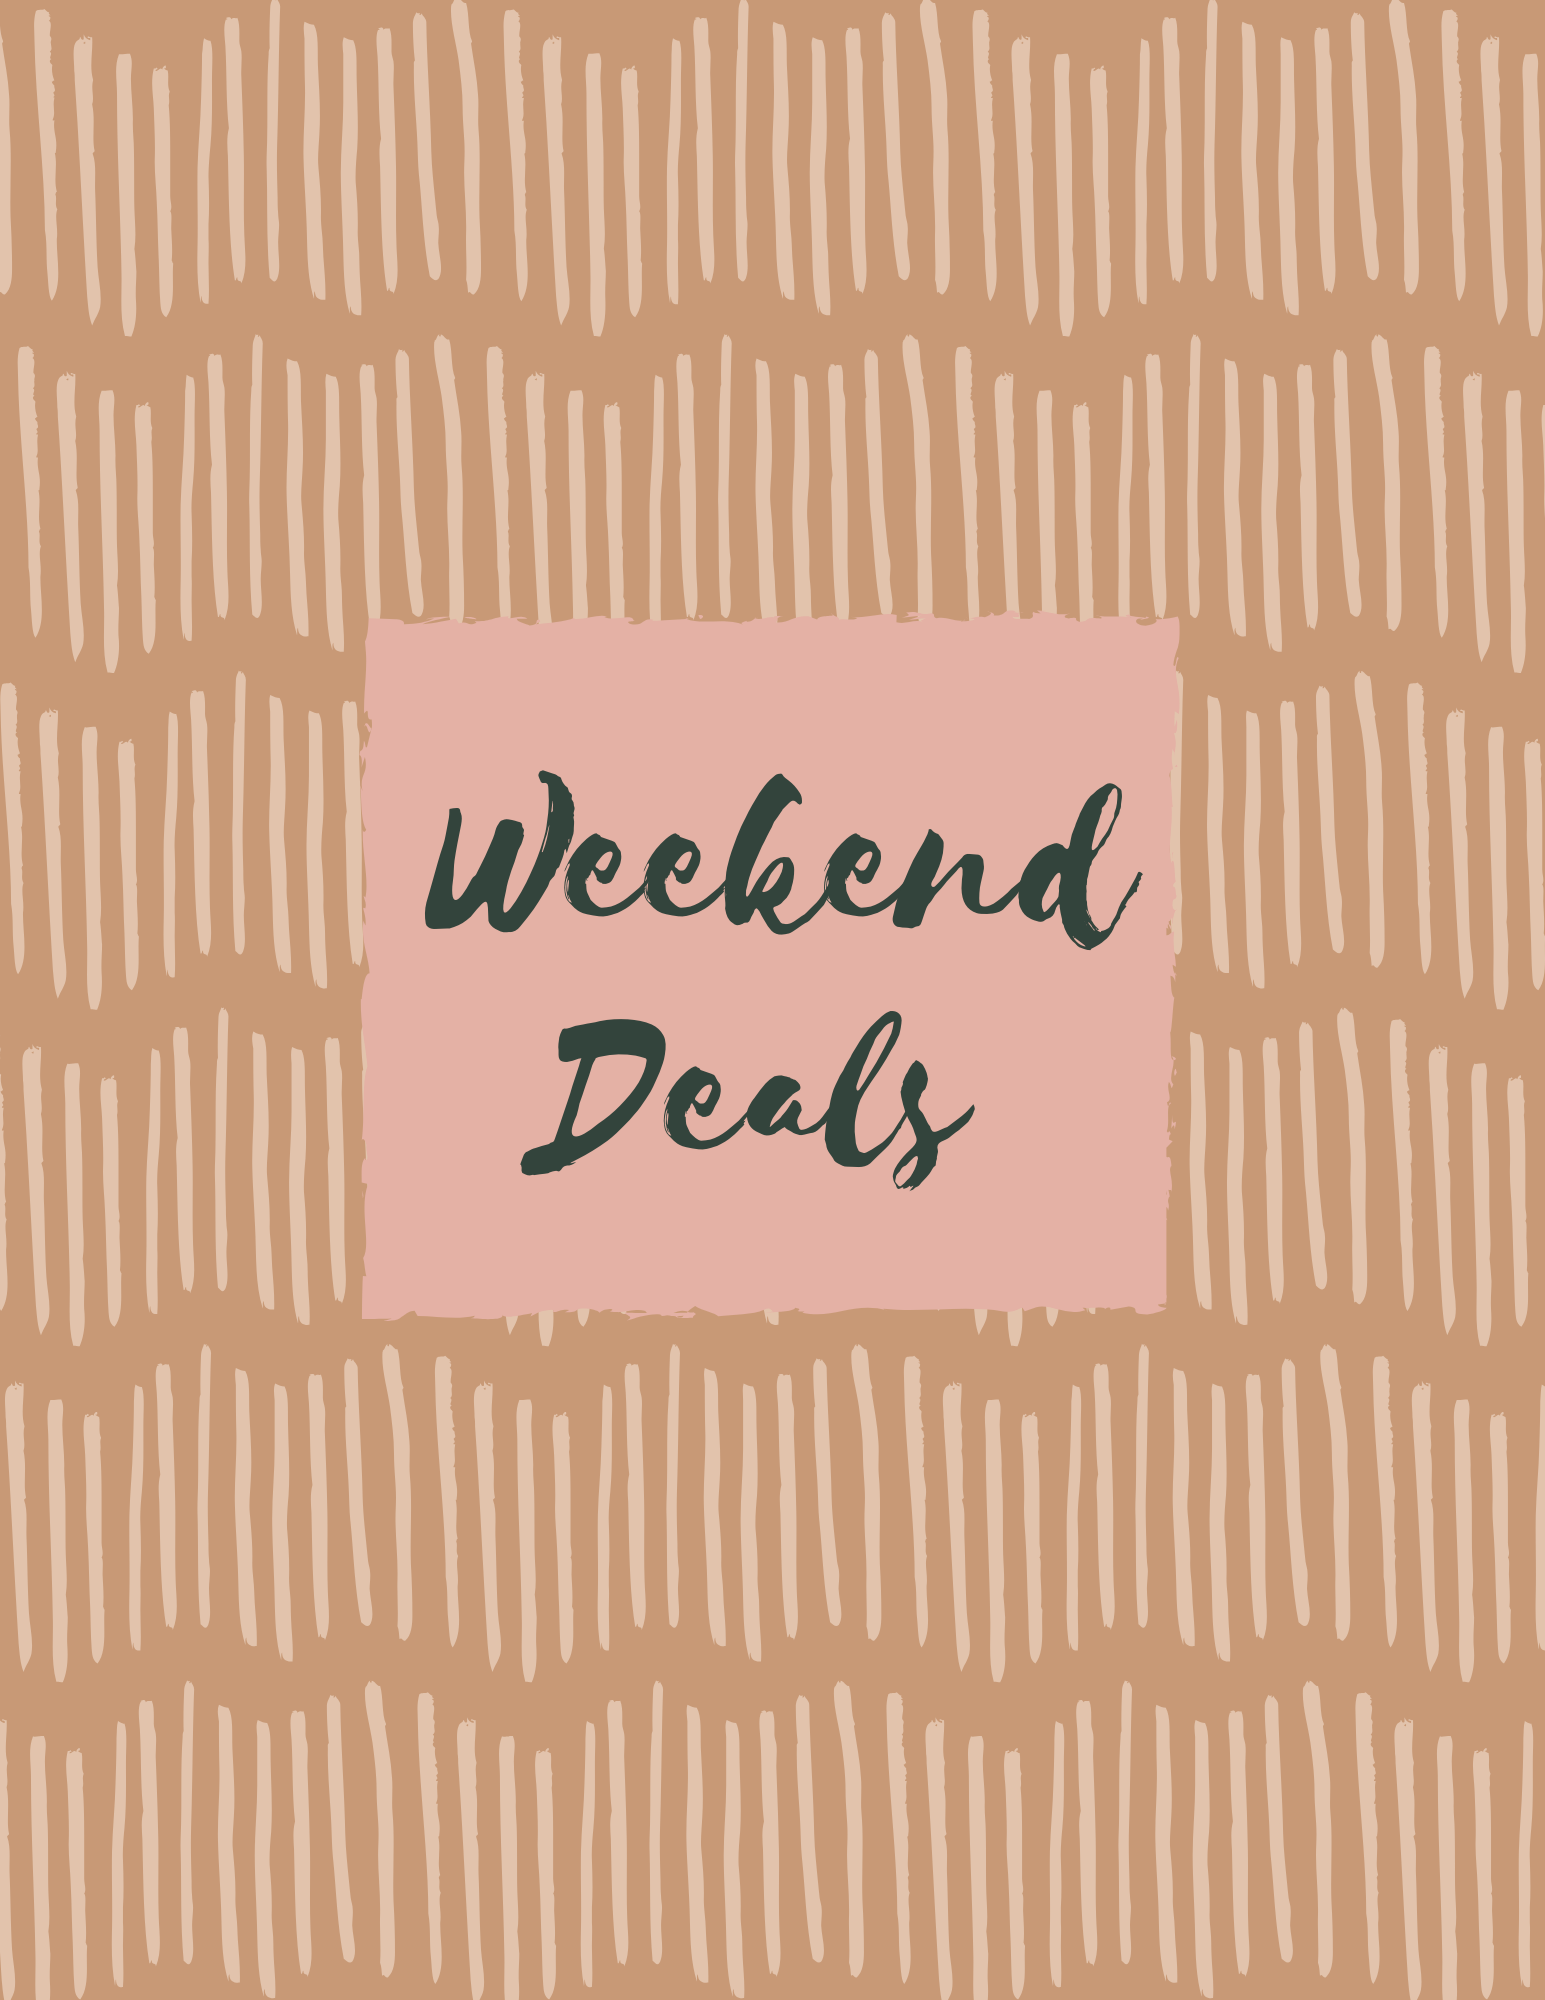 Weekend Deals